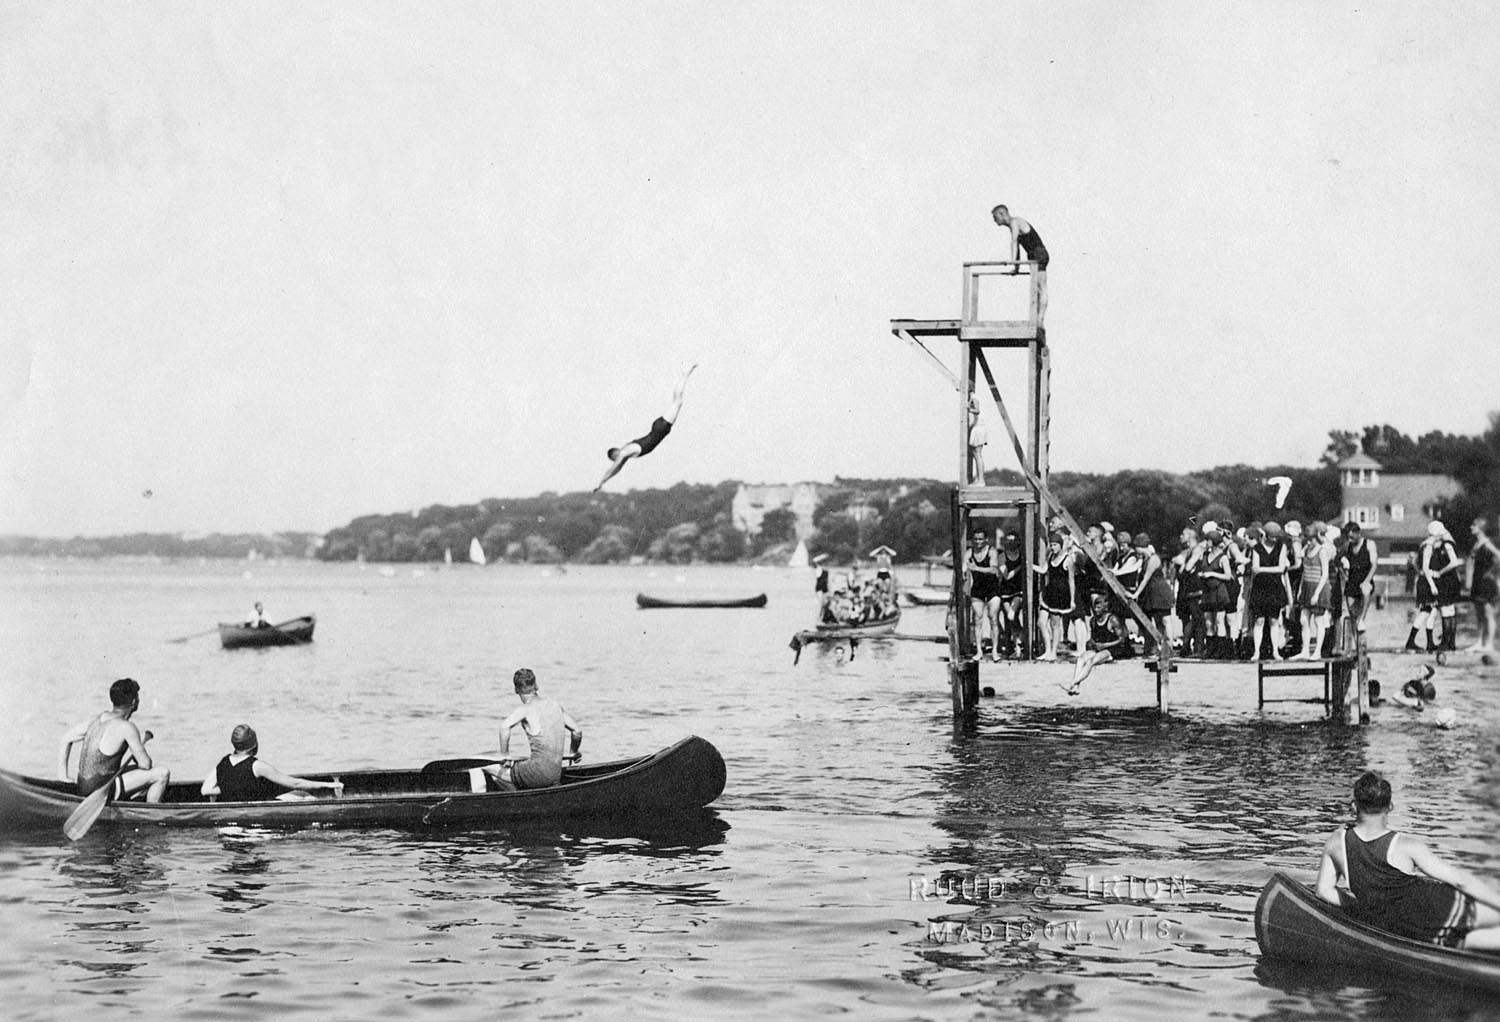 Diving into Lake Mendota, 1919